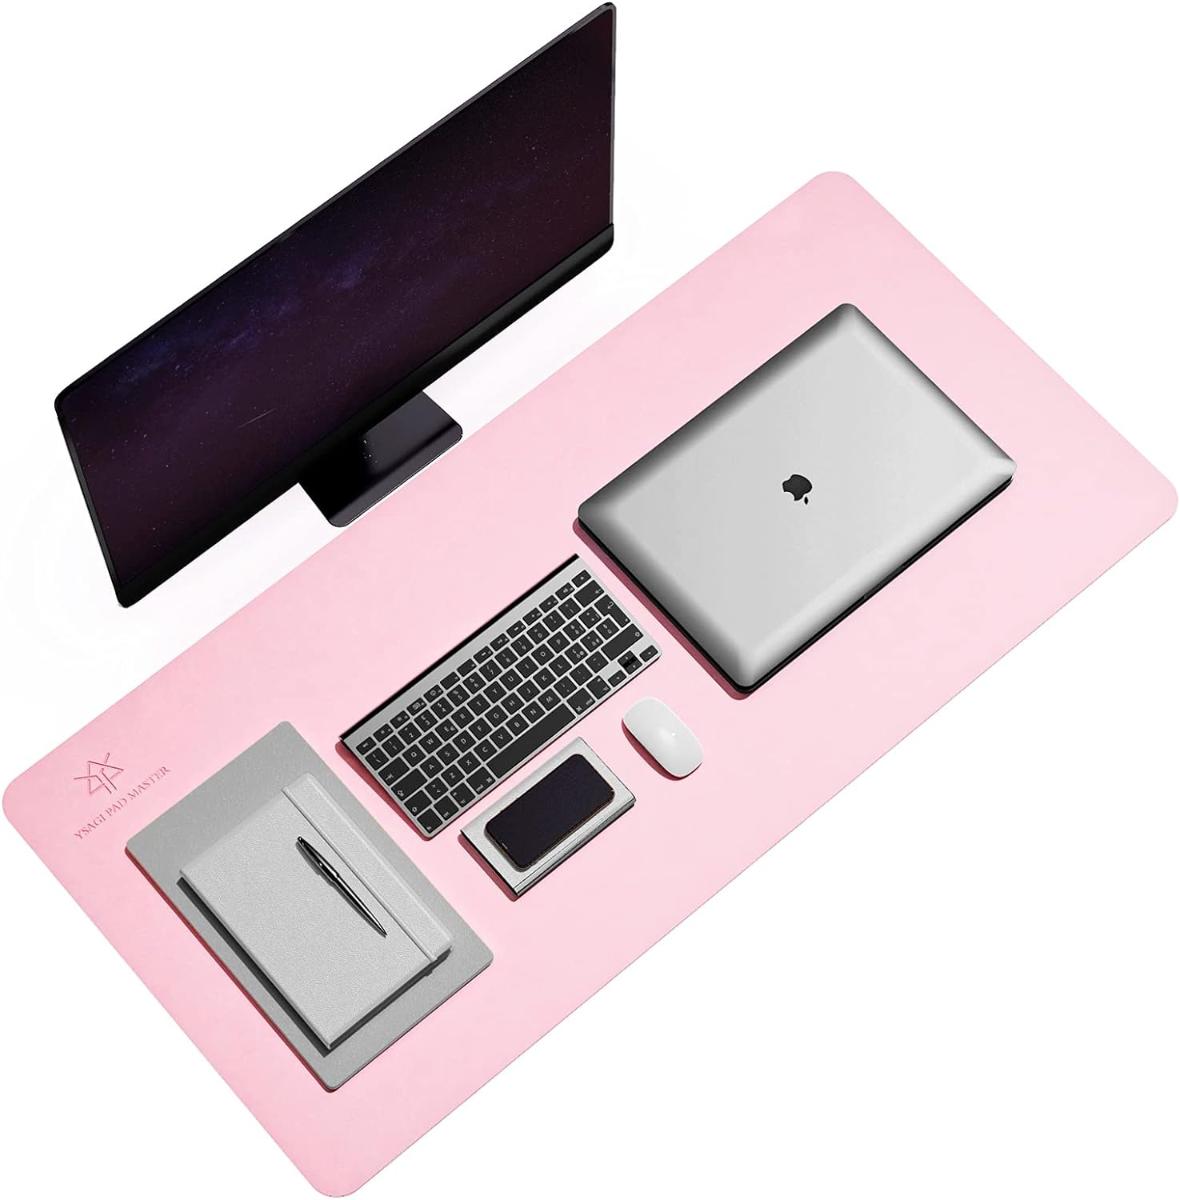 Herná podložka na písací stôl Ysagi 90x43cm/ ružová/ od 1Kč |087| - Vstupné zariadenie k PC